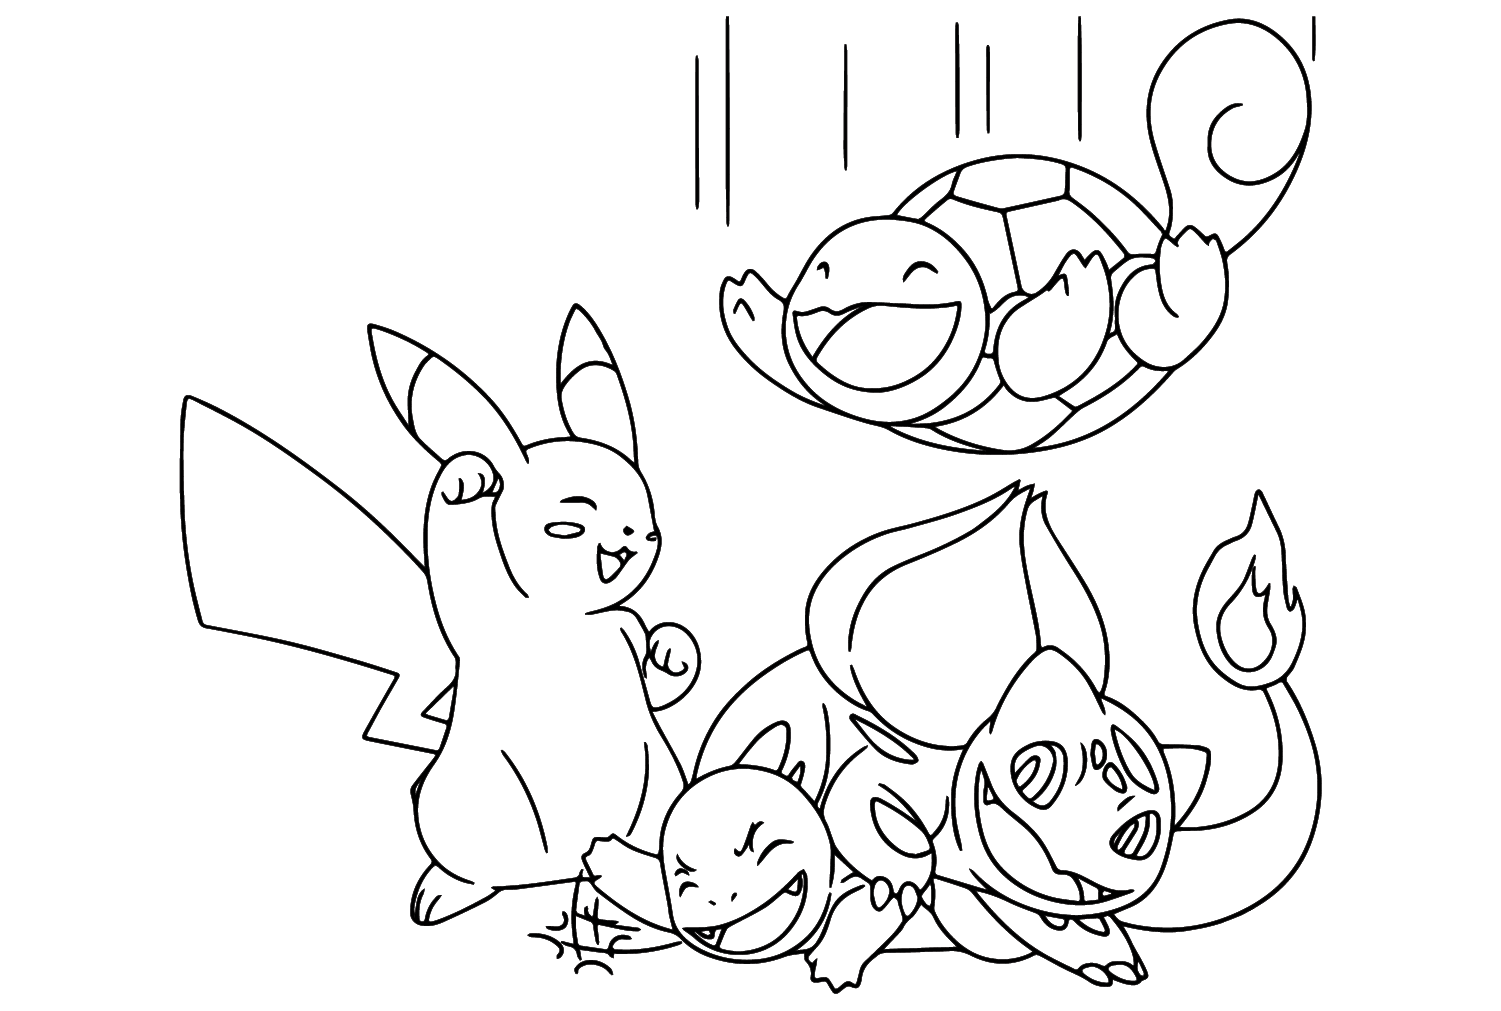 Pikachu und Squirtle, Charmander, Bulbasaur Malseite von Bulbasaur